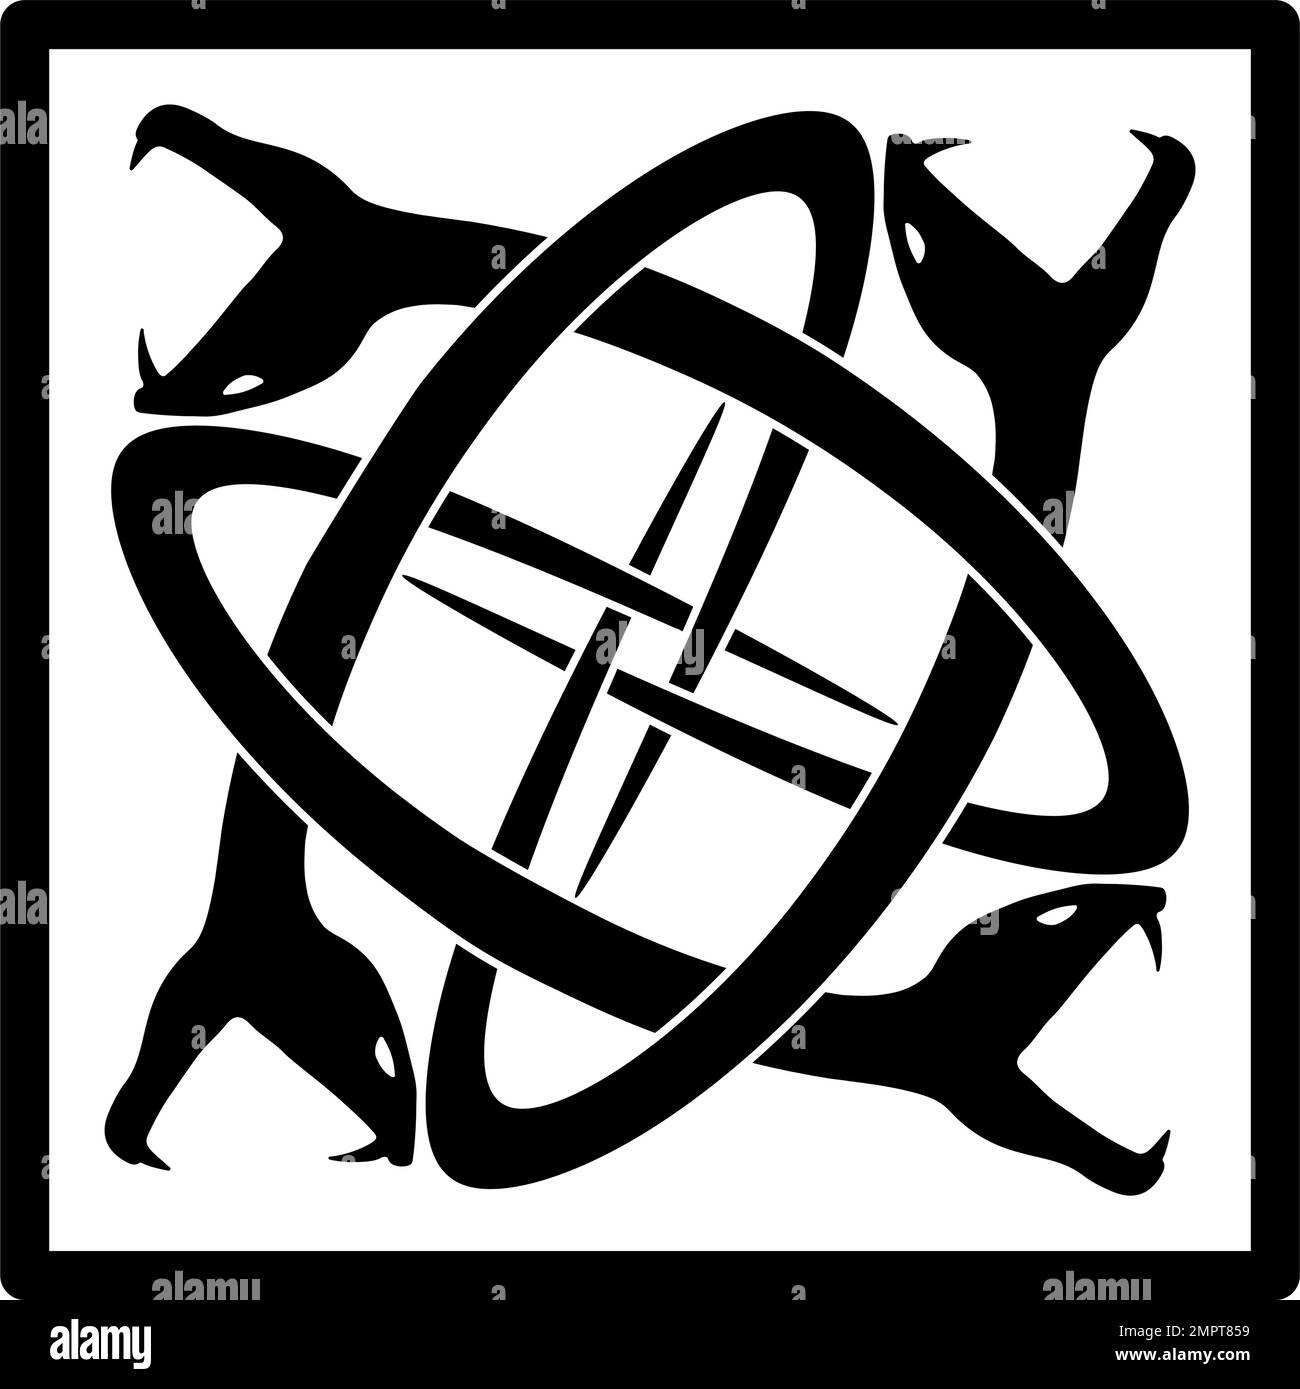 Quatre serpents entrelacés enfermés dans un carré - noir sur blanc Illustration de Vecteur